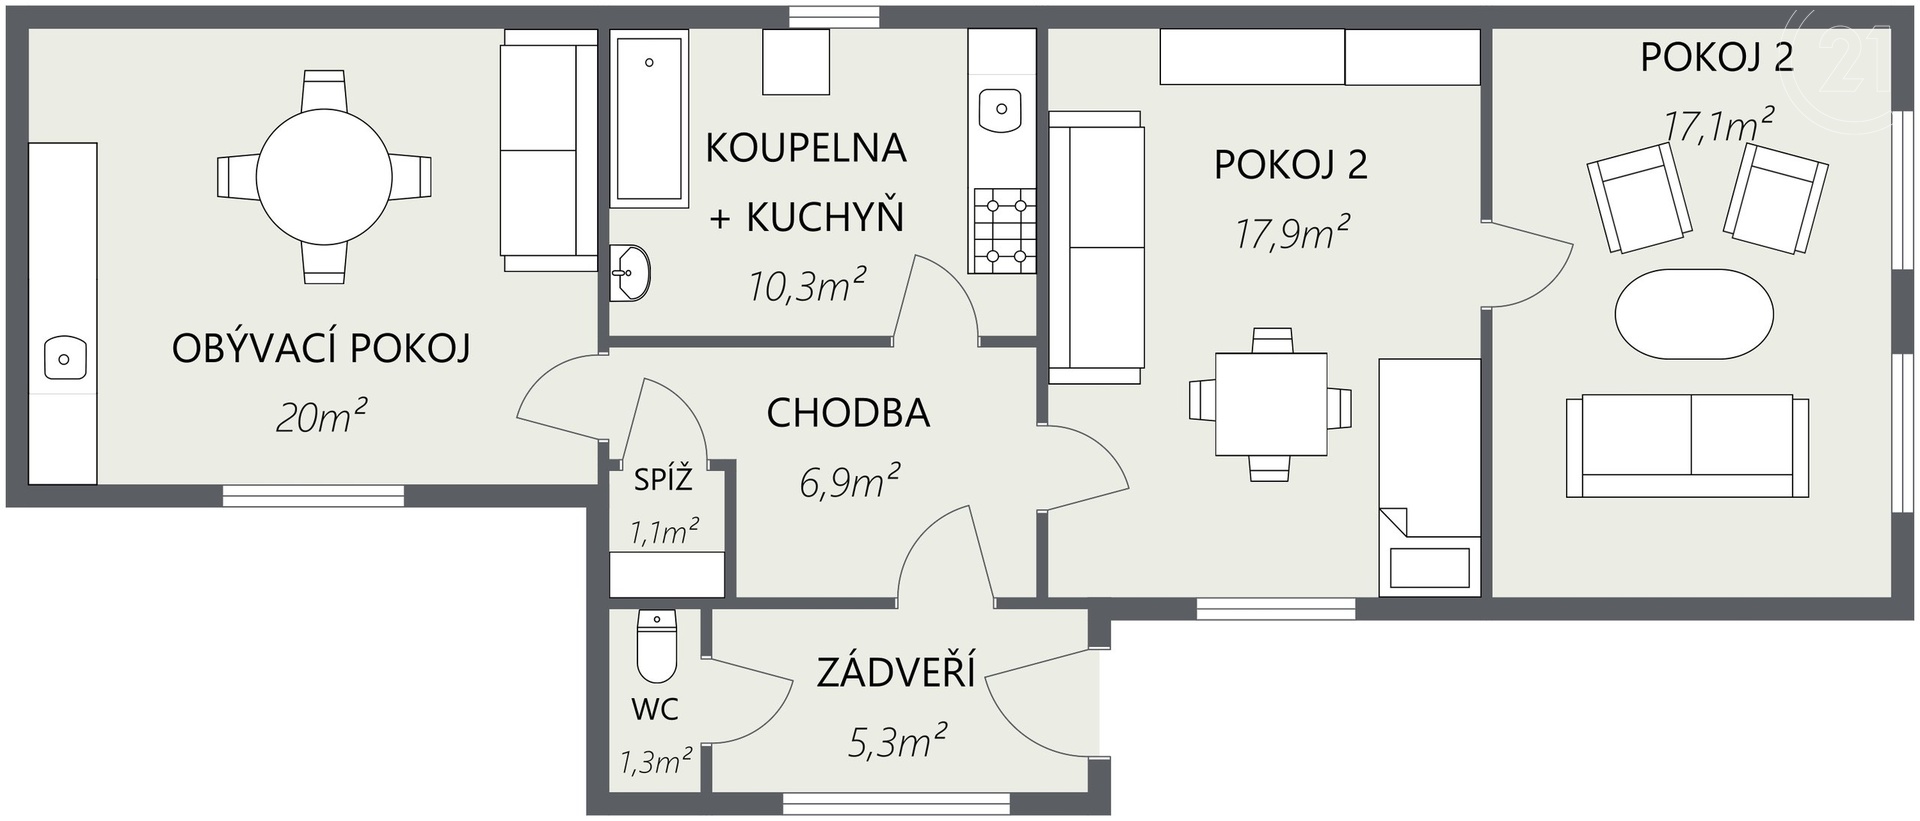 domažlice - 2D Floor Plan